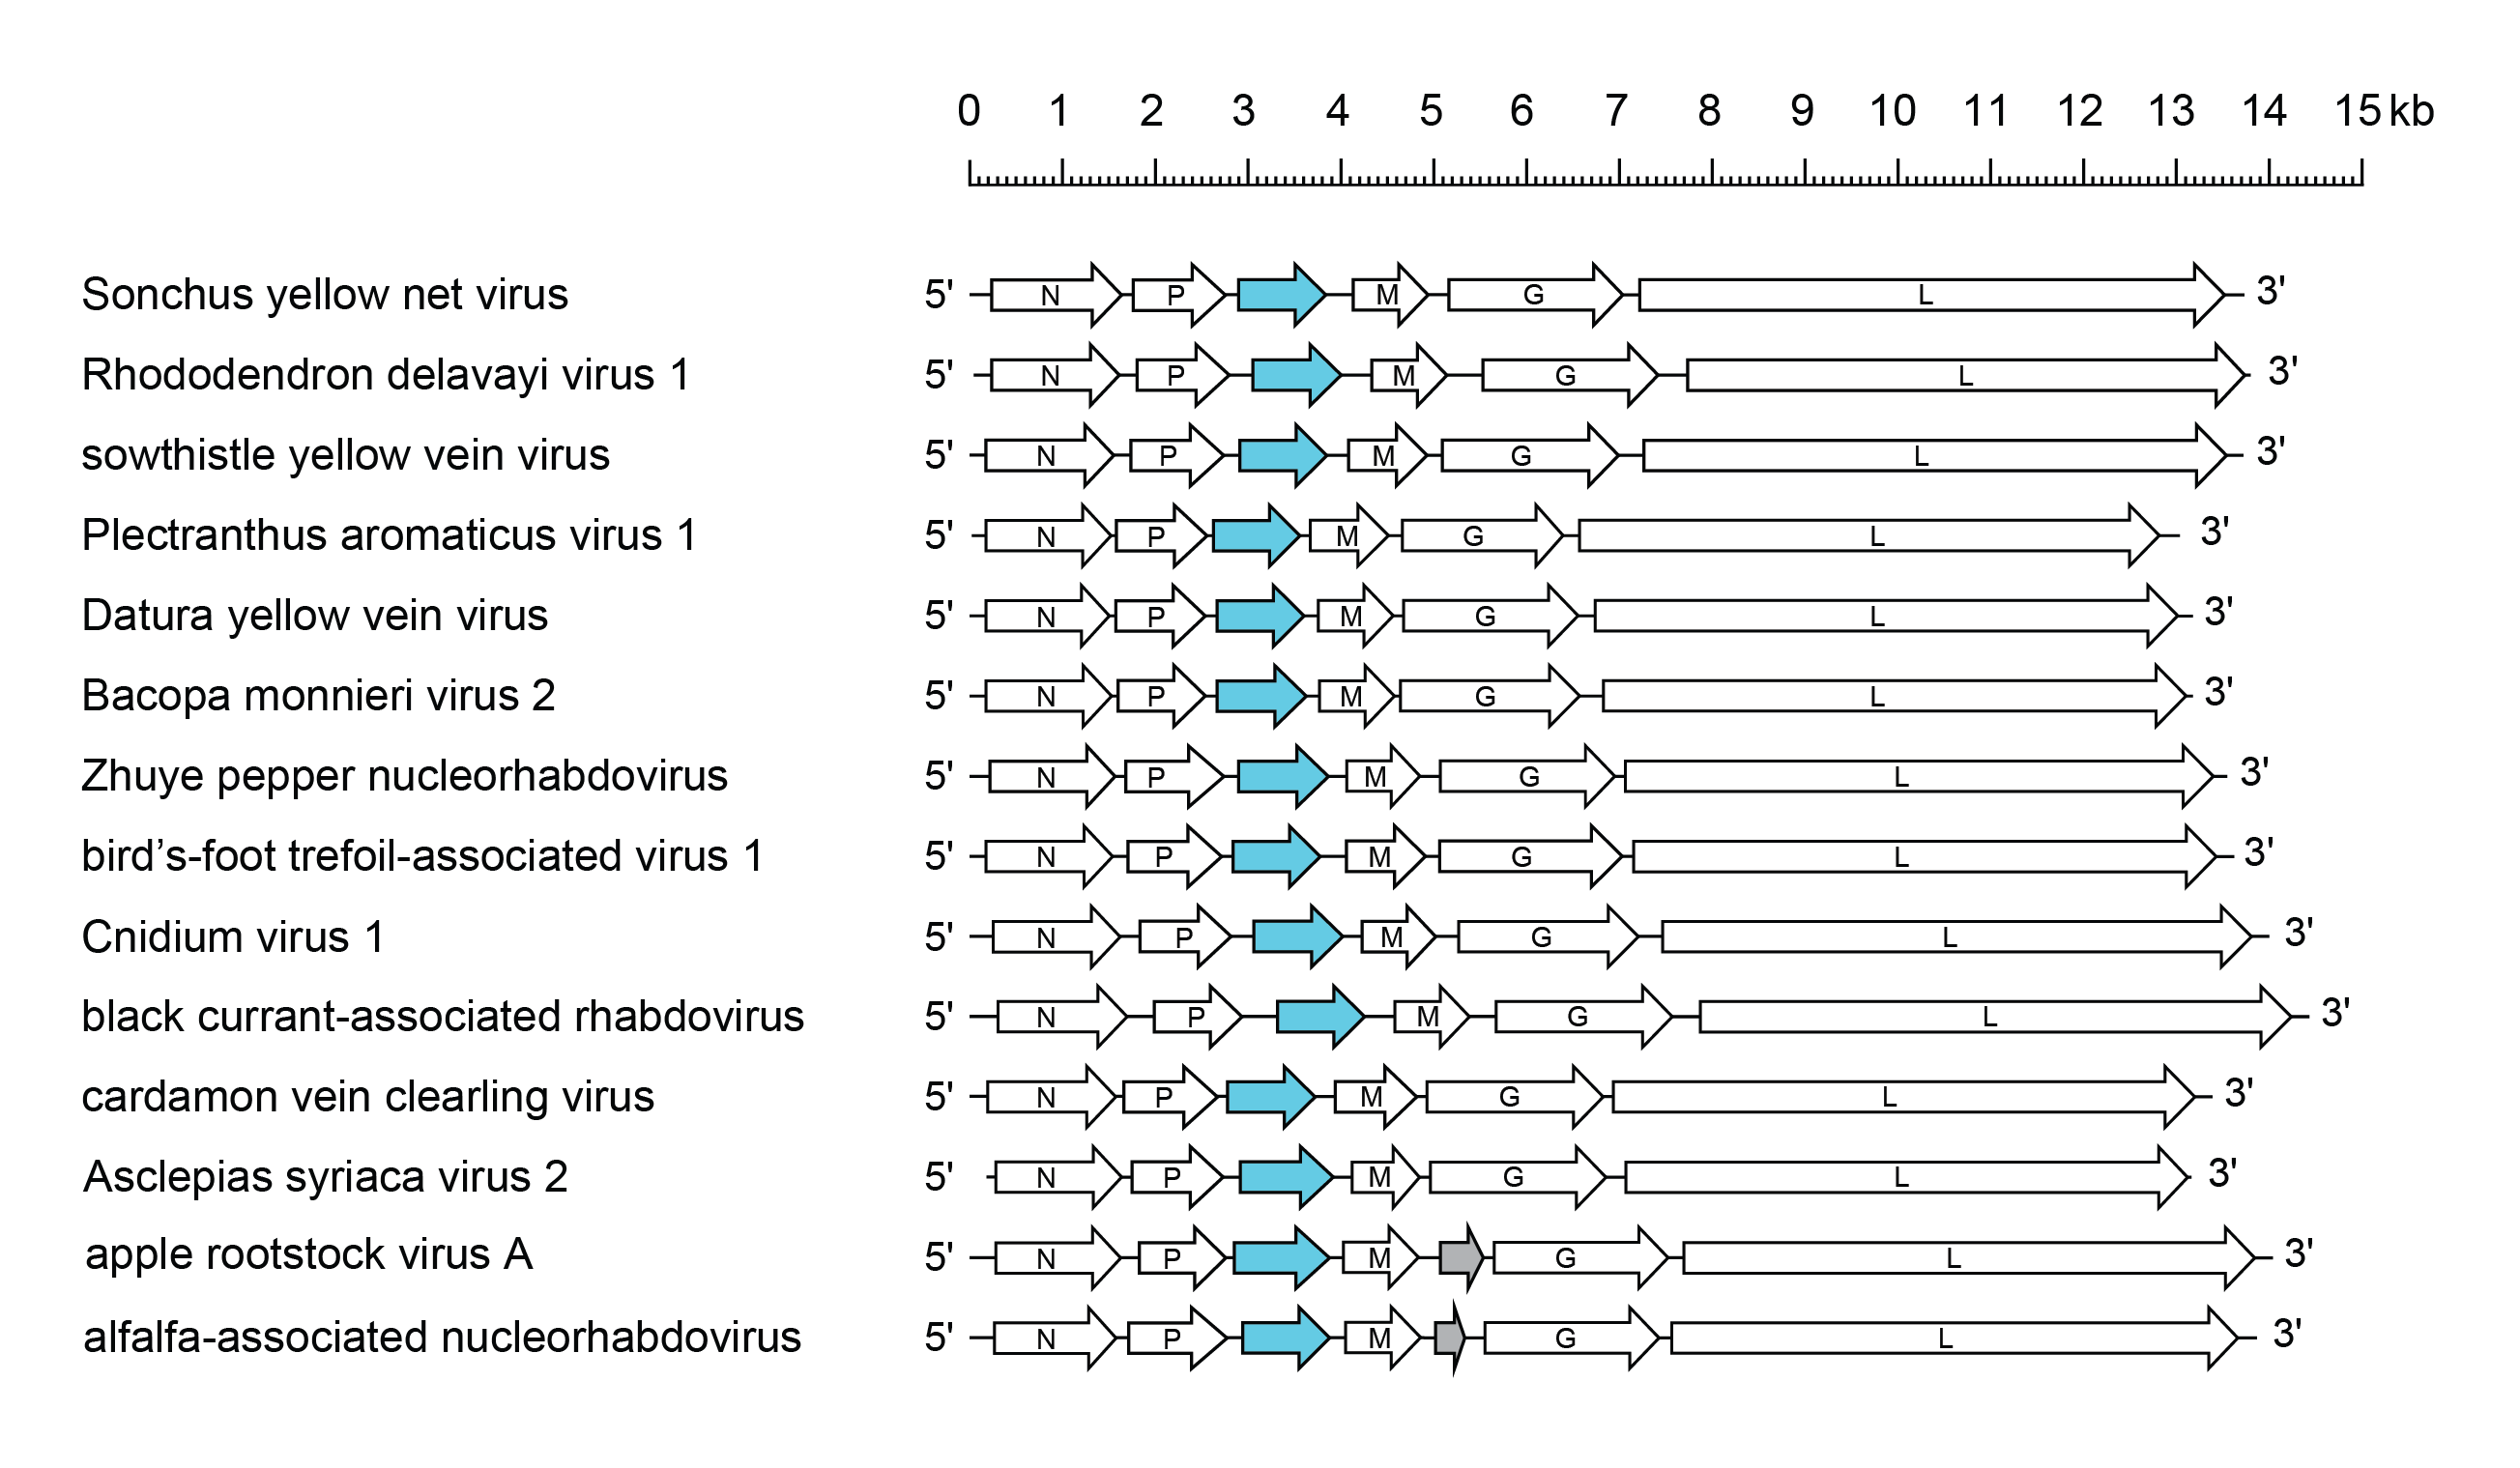 Betanucleorhabdovirus genome